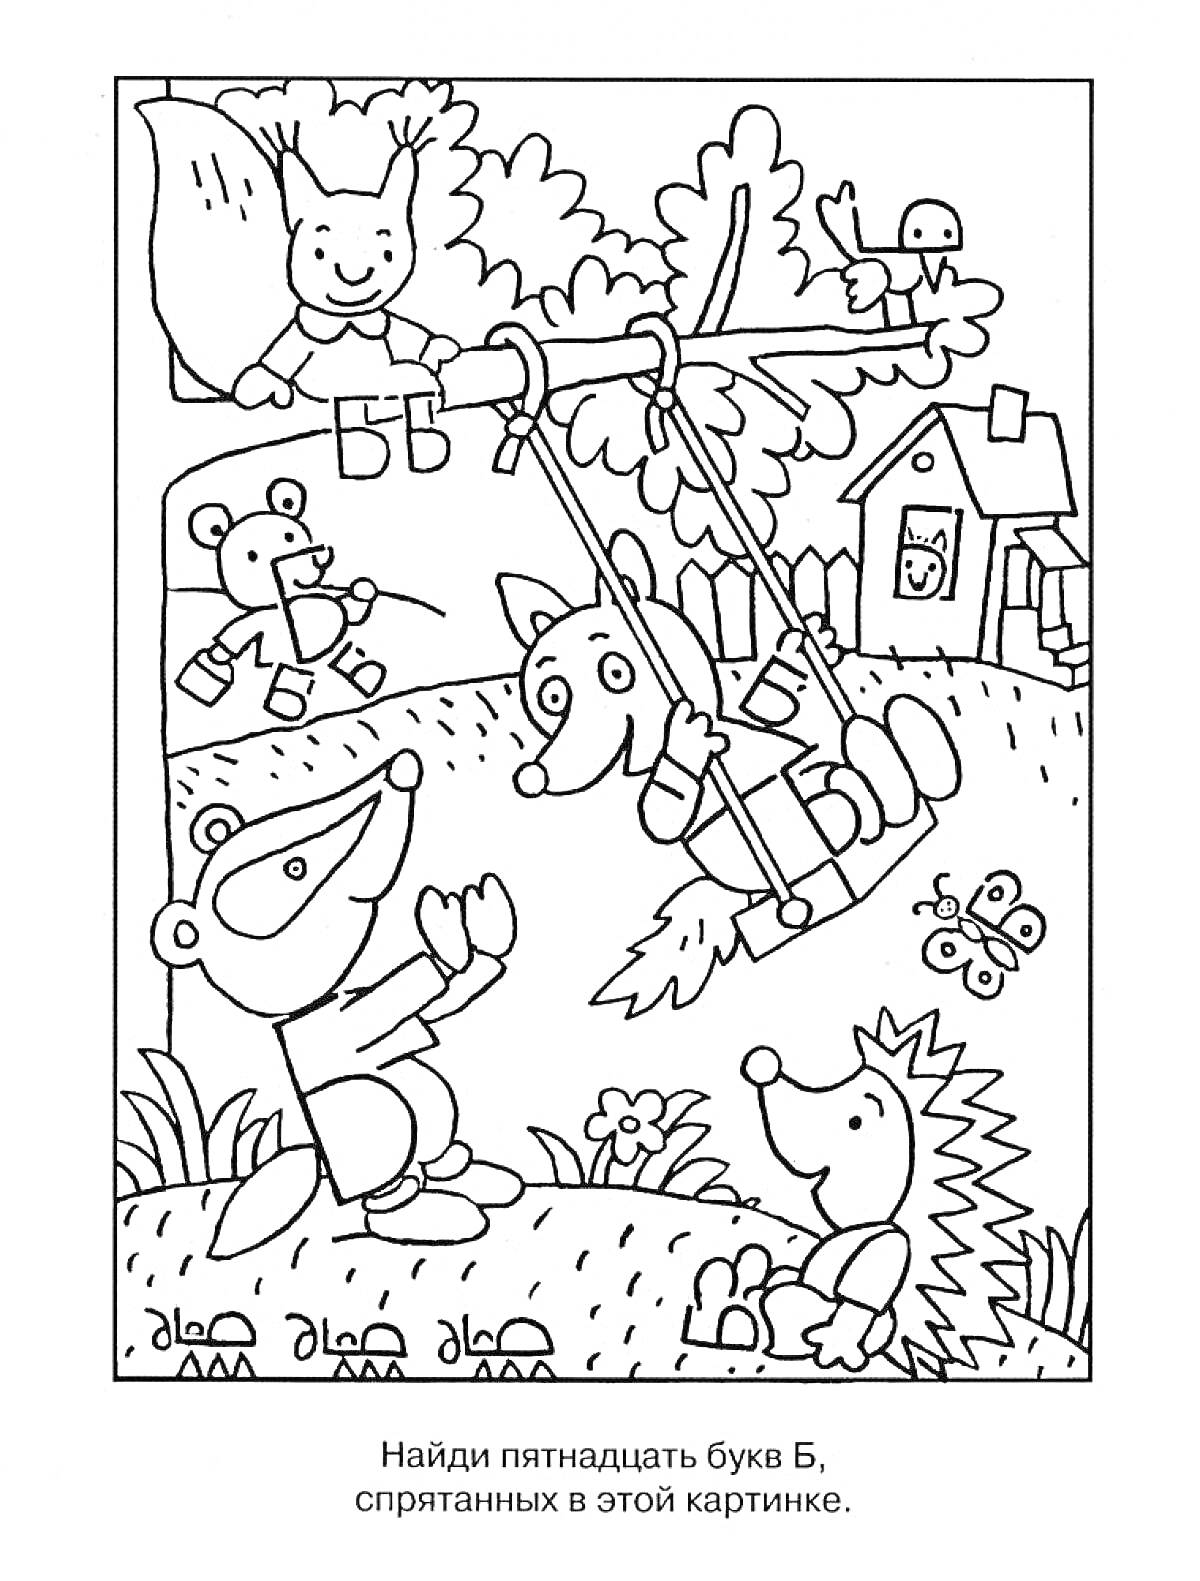 Раскраска Найди пятнадцать букв Б на картинке с лесными животными: летящий зайчик, медвежонок с воздушным шаром, лиса на качелях, медвежонок (напарник лисы в качелях), лягушка, ежик с бабочкой.